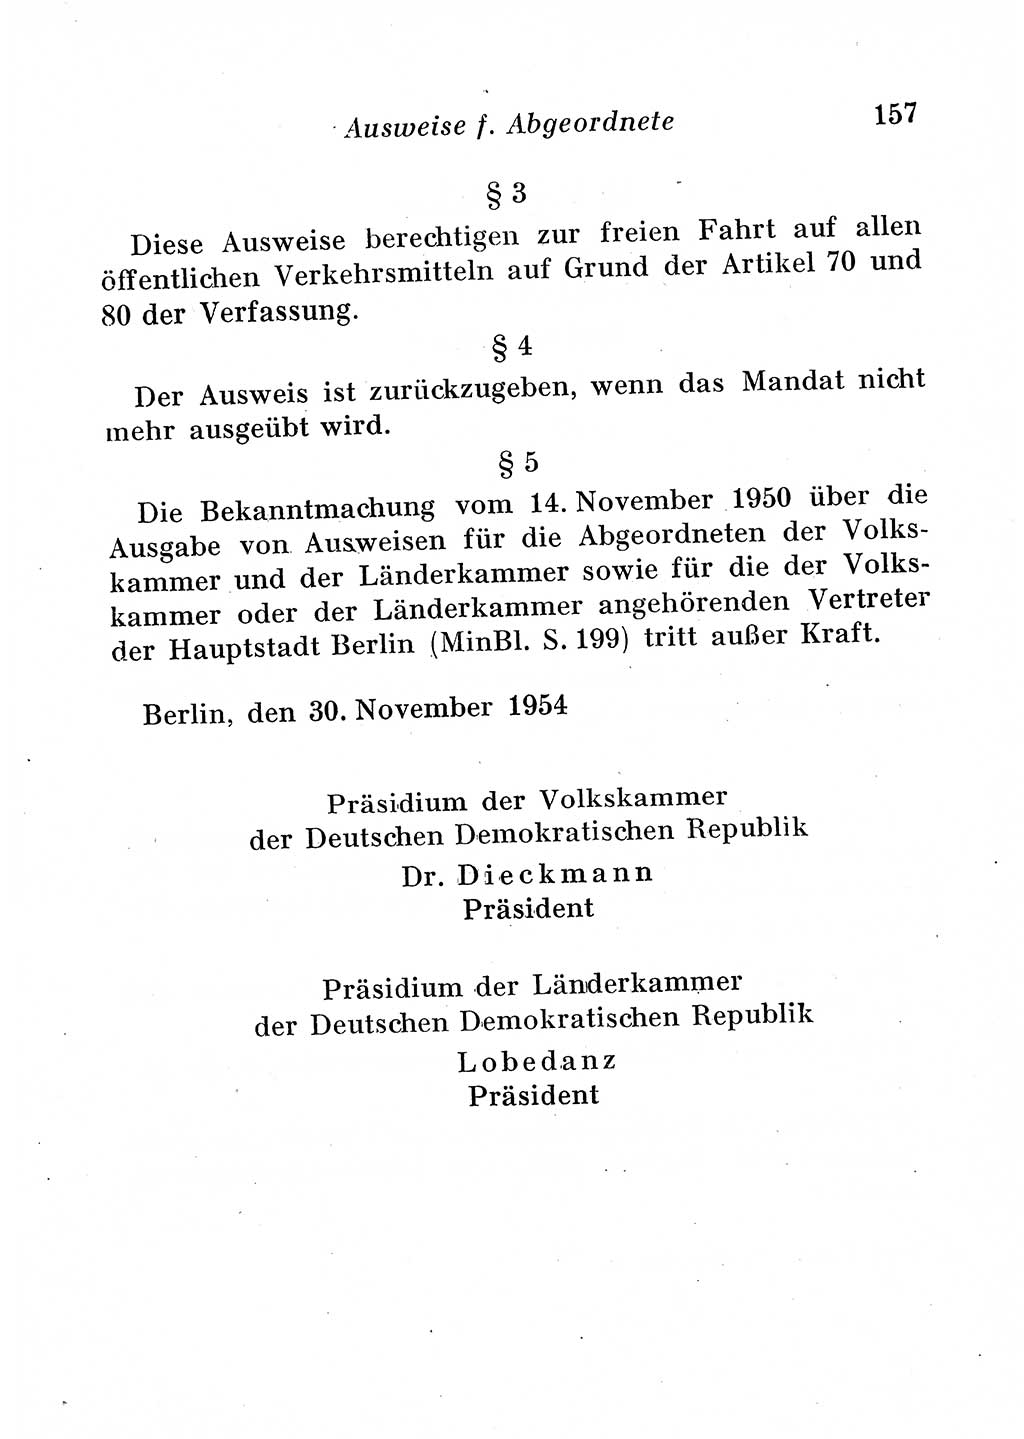 Staats- und verwaltungsrechtliche Gesetze der Deutschen Demokratischen Republik (DDR) 1958, Seite 157 (StVerwR Ges. DDR 1958, S. 157)